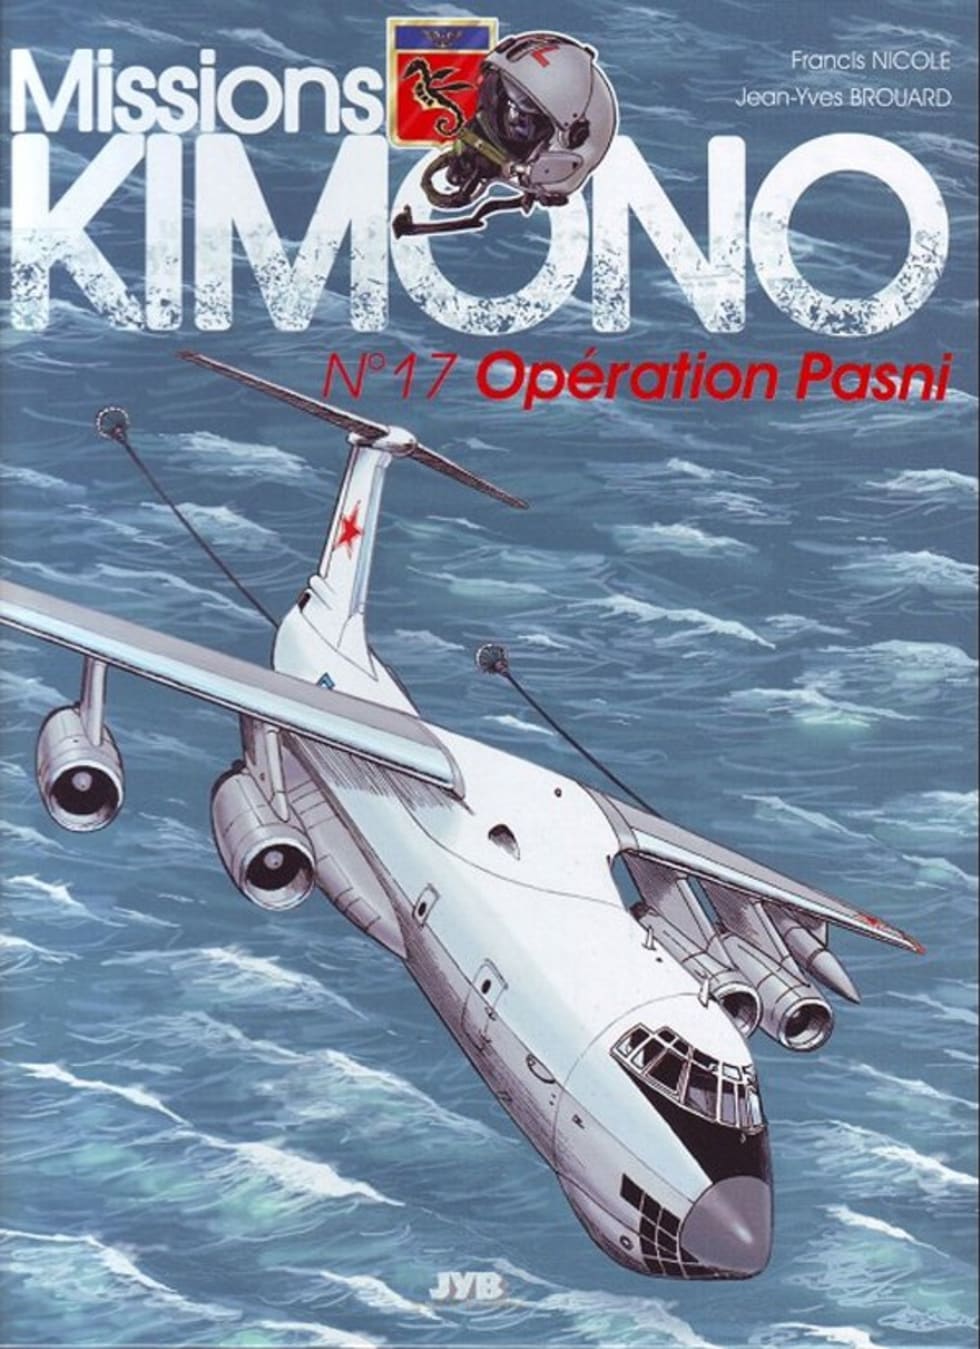 Mission Kimono Opération Pasni